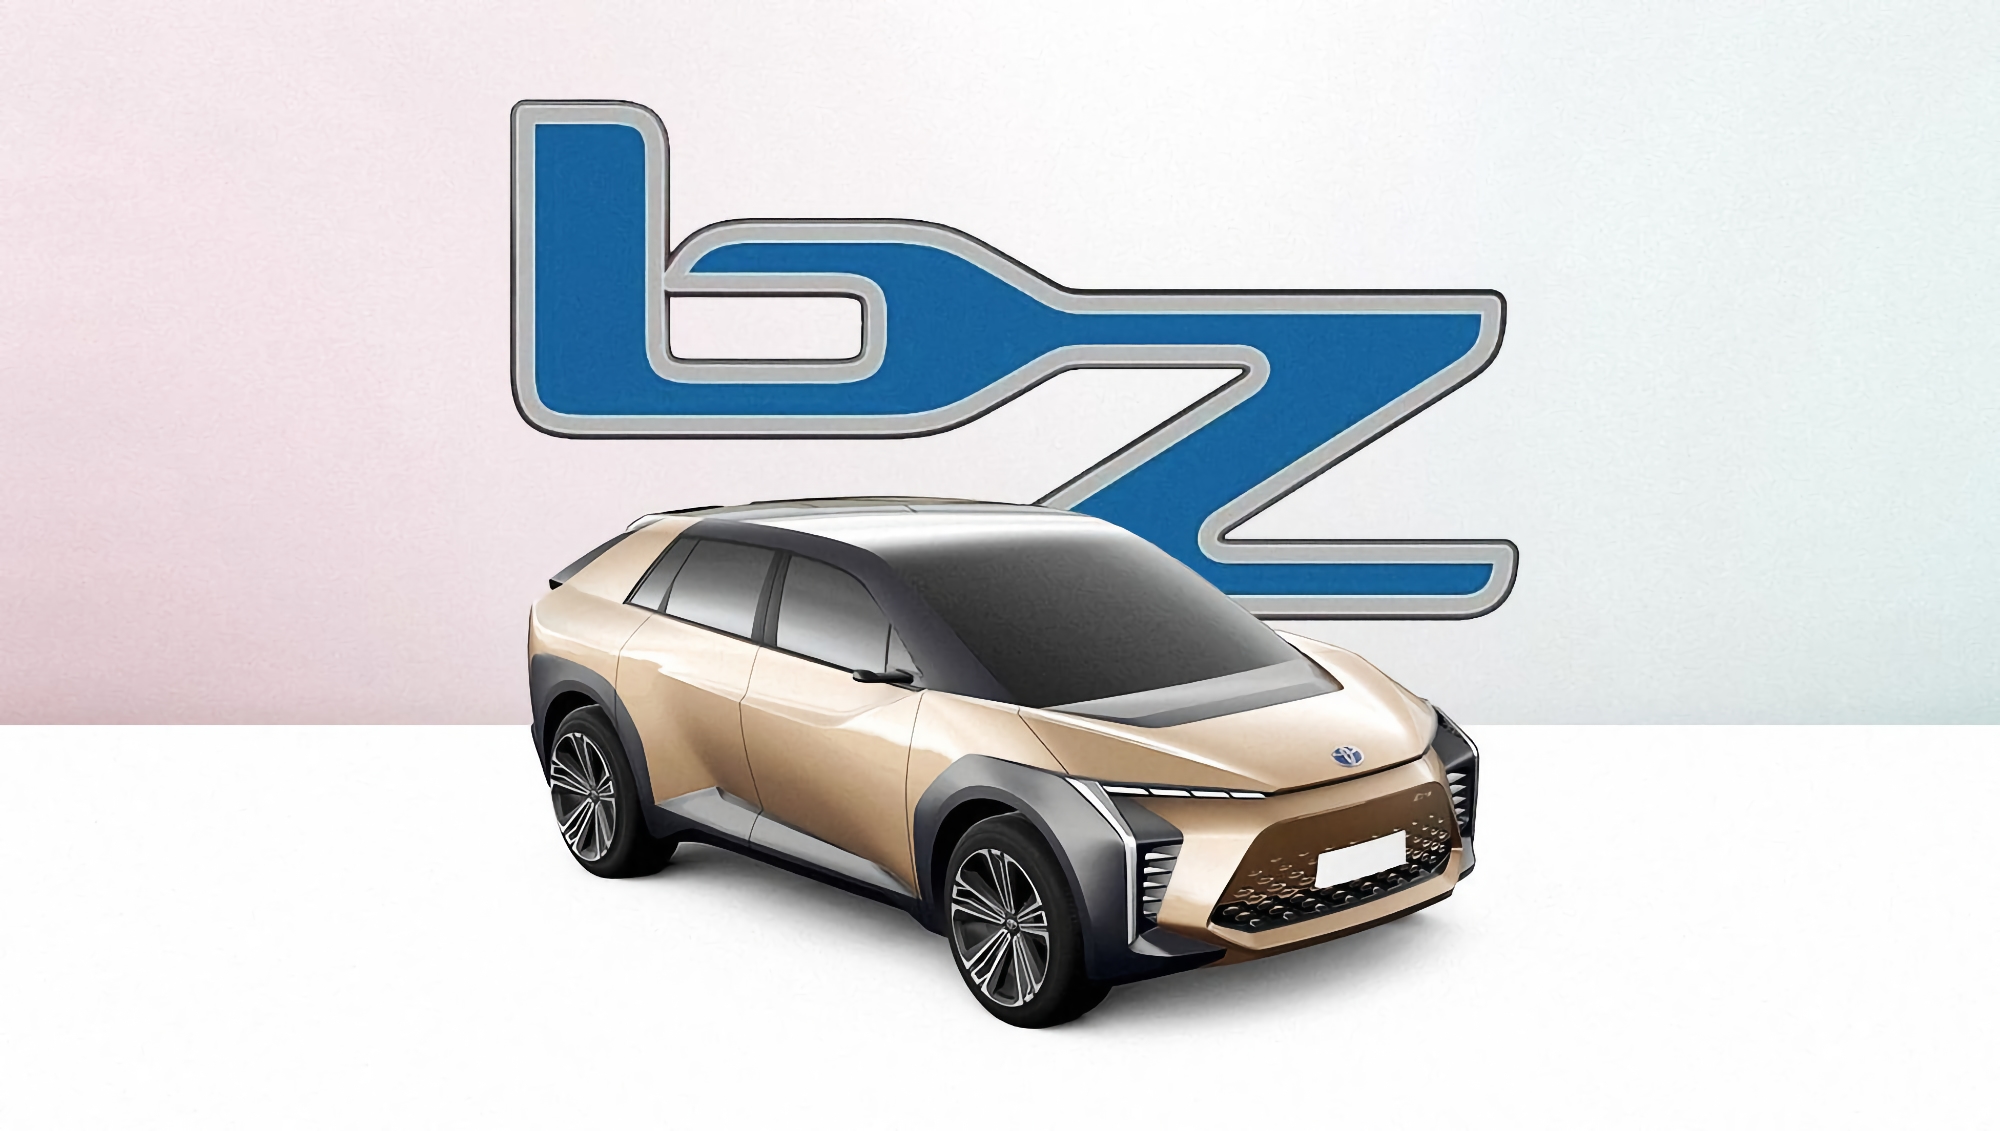 Plotka: Toyota pokaże na Shanghai Auto Show pierwszy samochód elektryczny Beyond Zero, który będzie ładować się do 100% w 10 minut